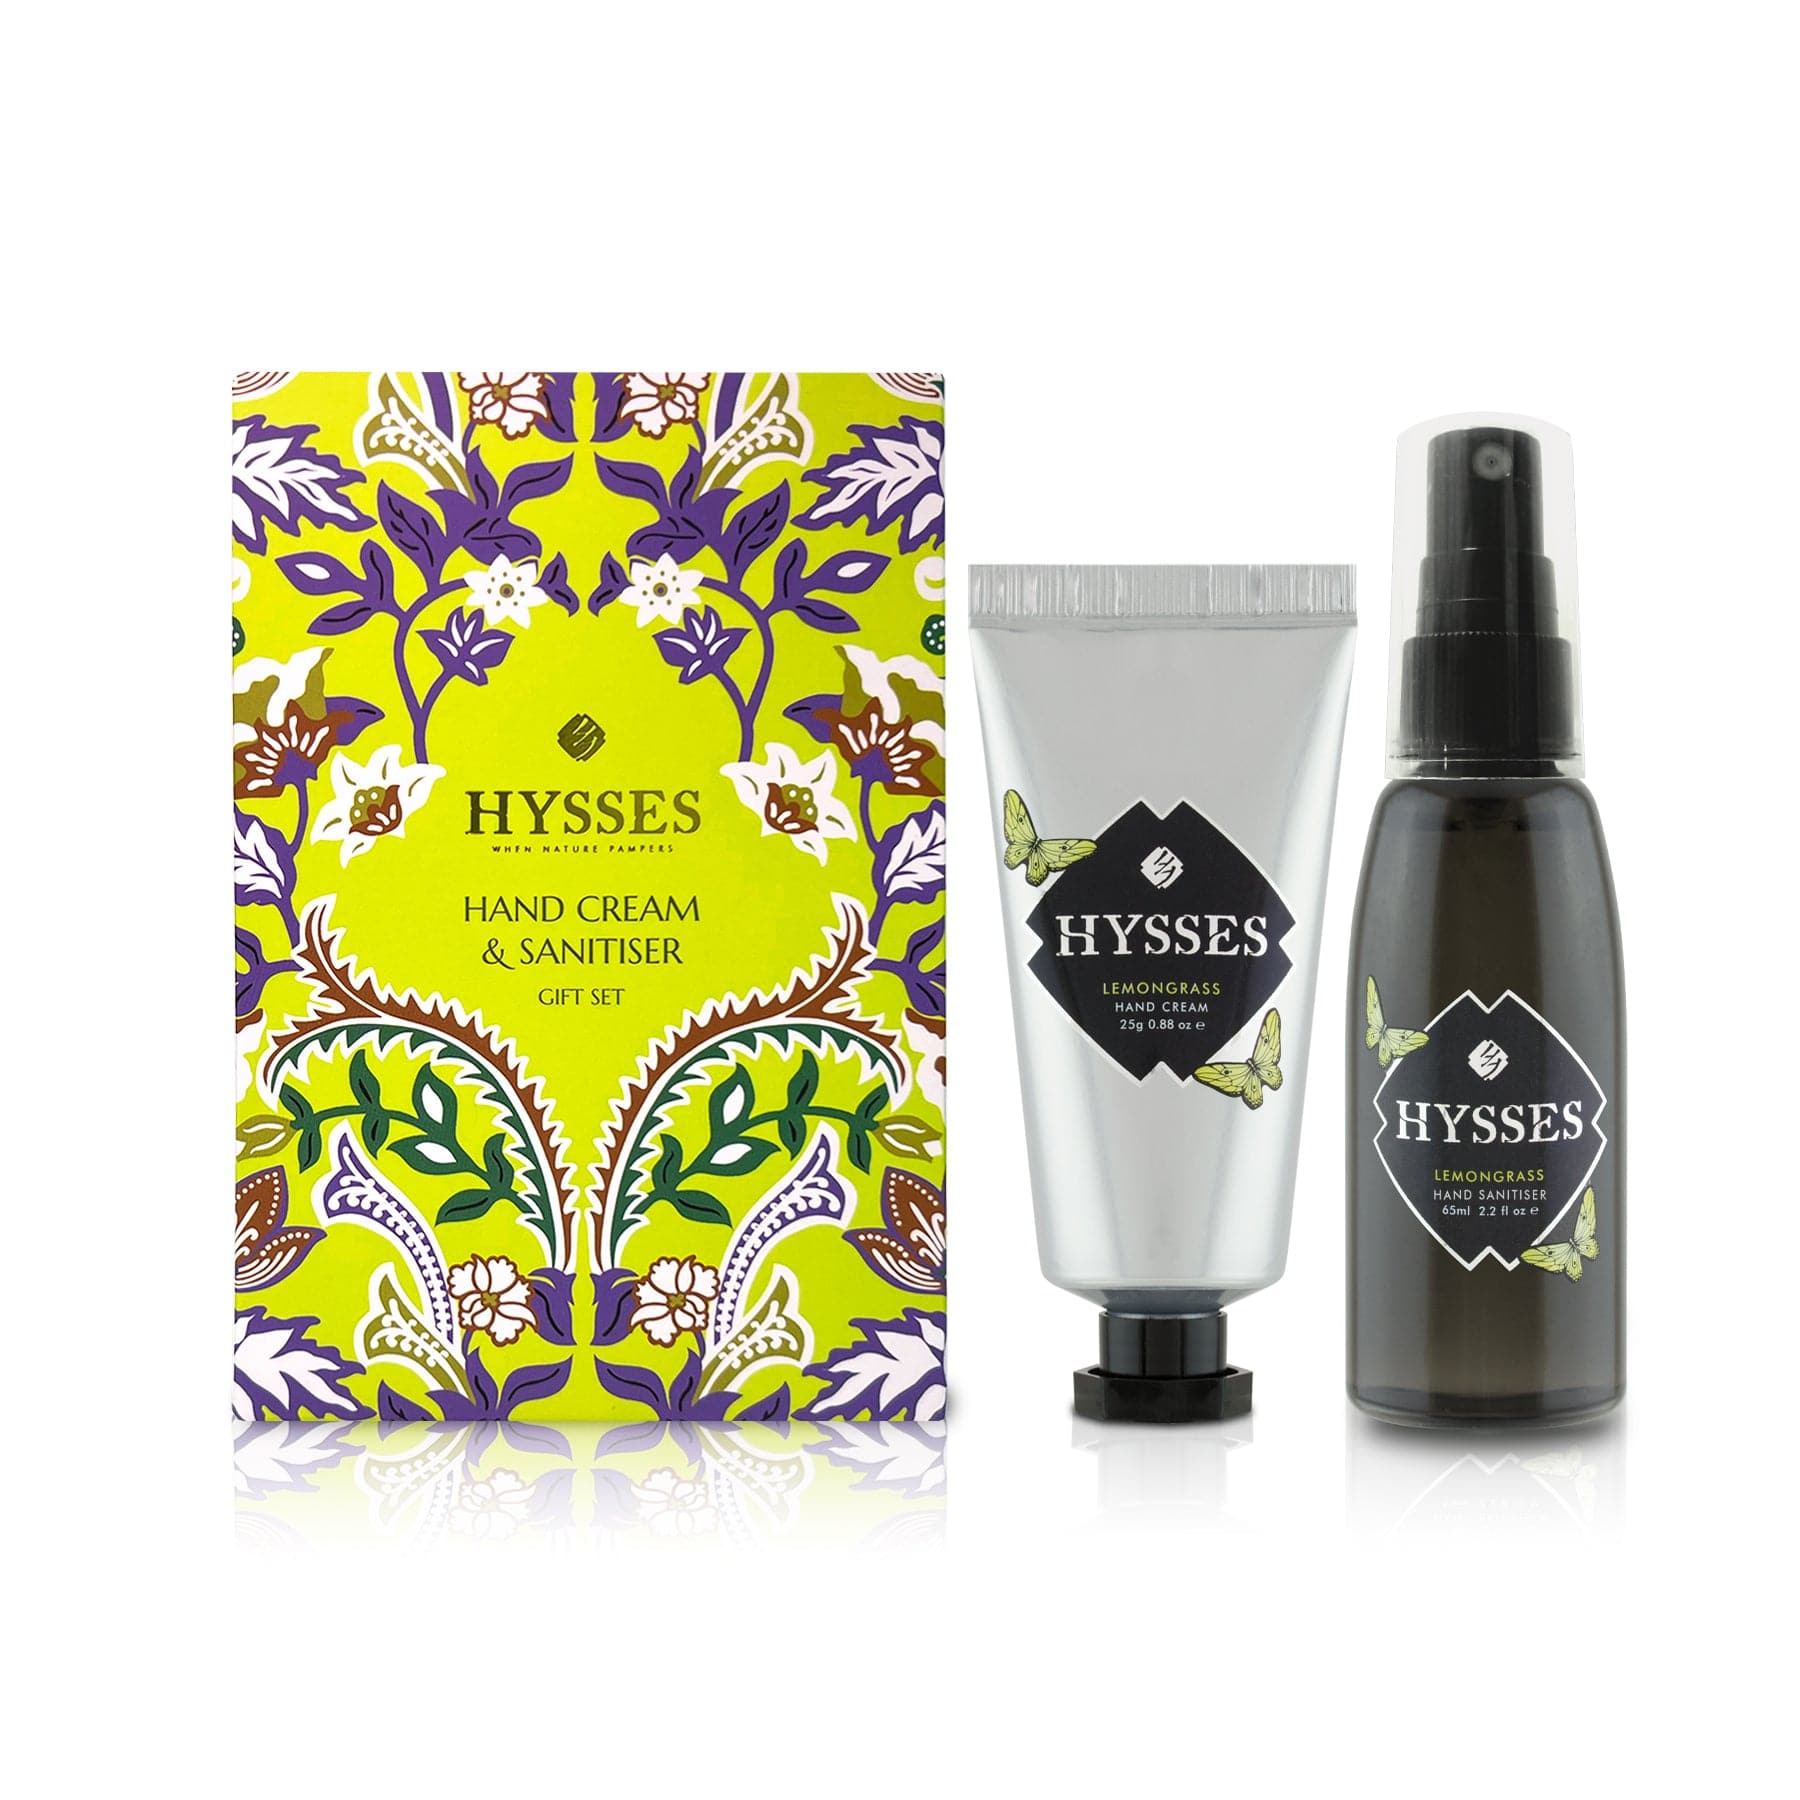 Hysses Body Care Lemongrass Travel Gift Set (Hand Cream & Hand Sanitiser)